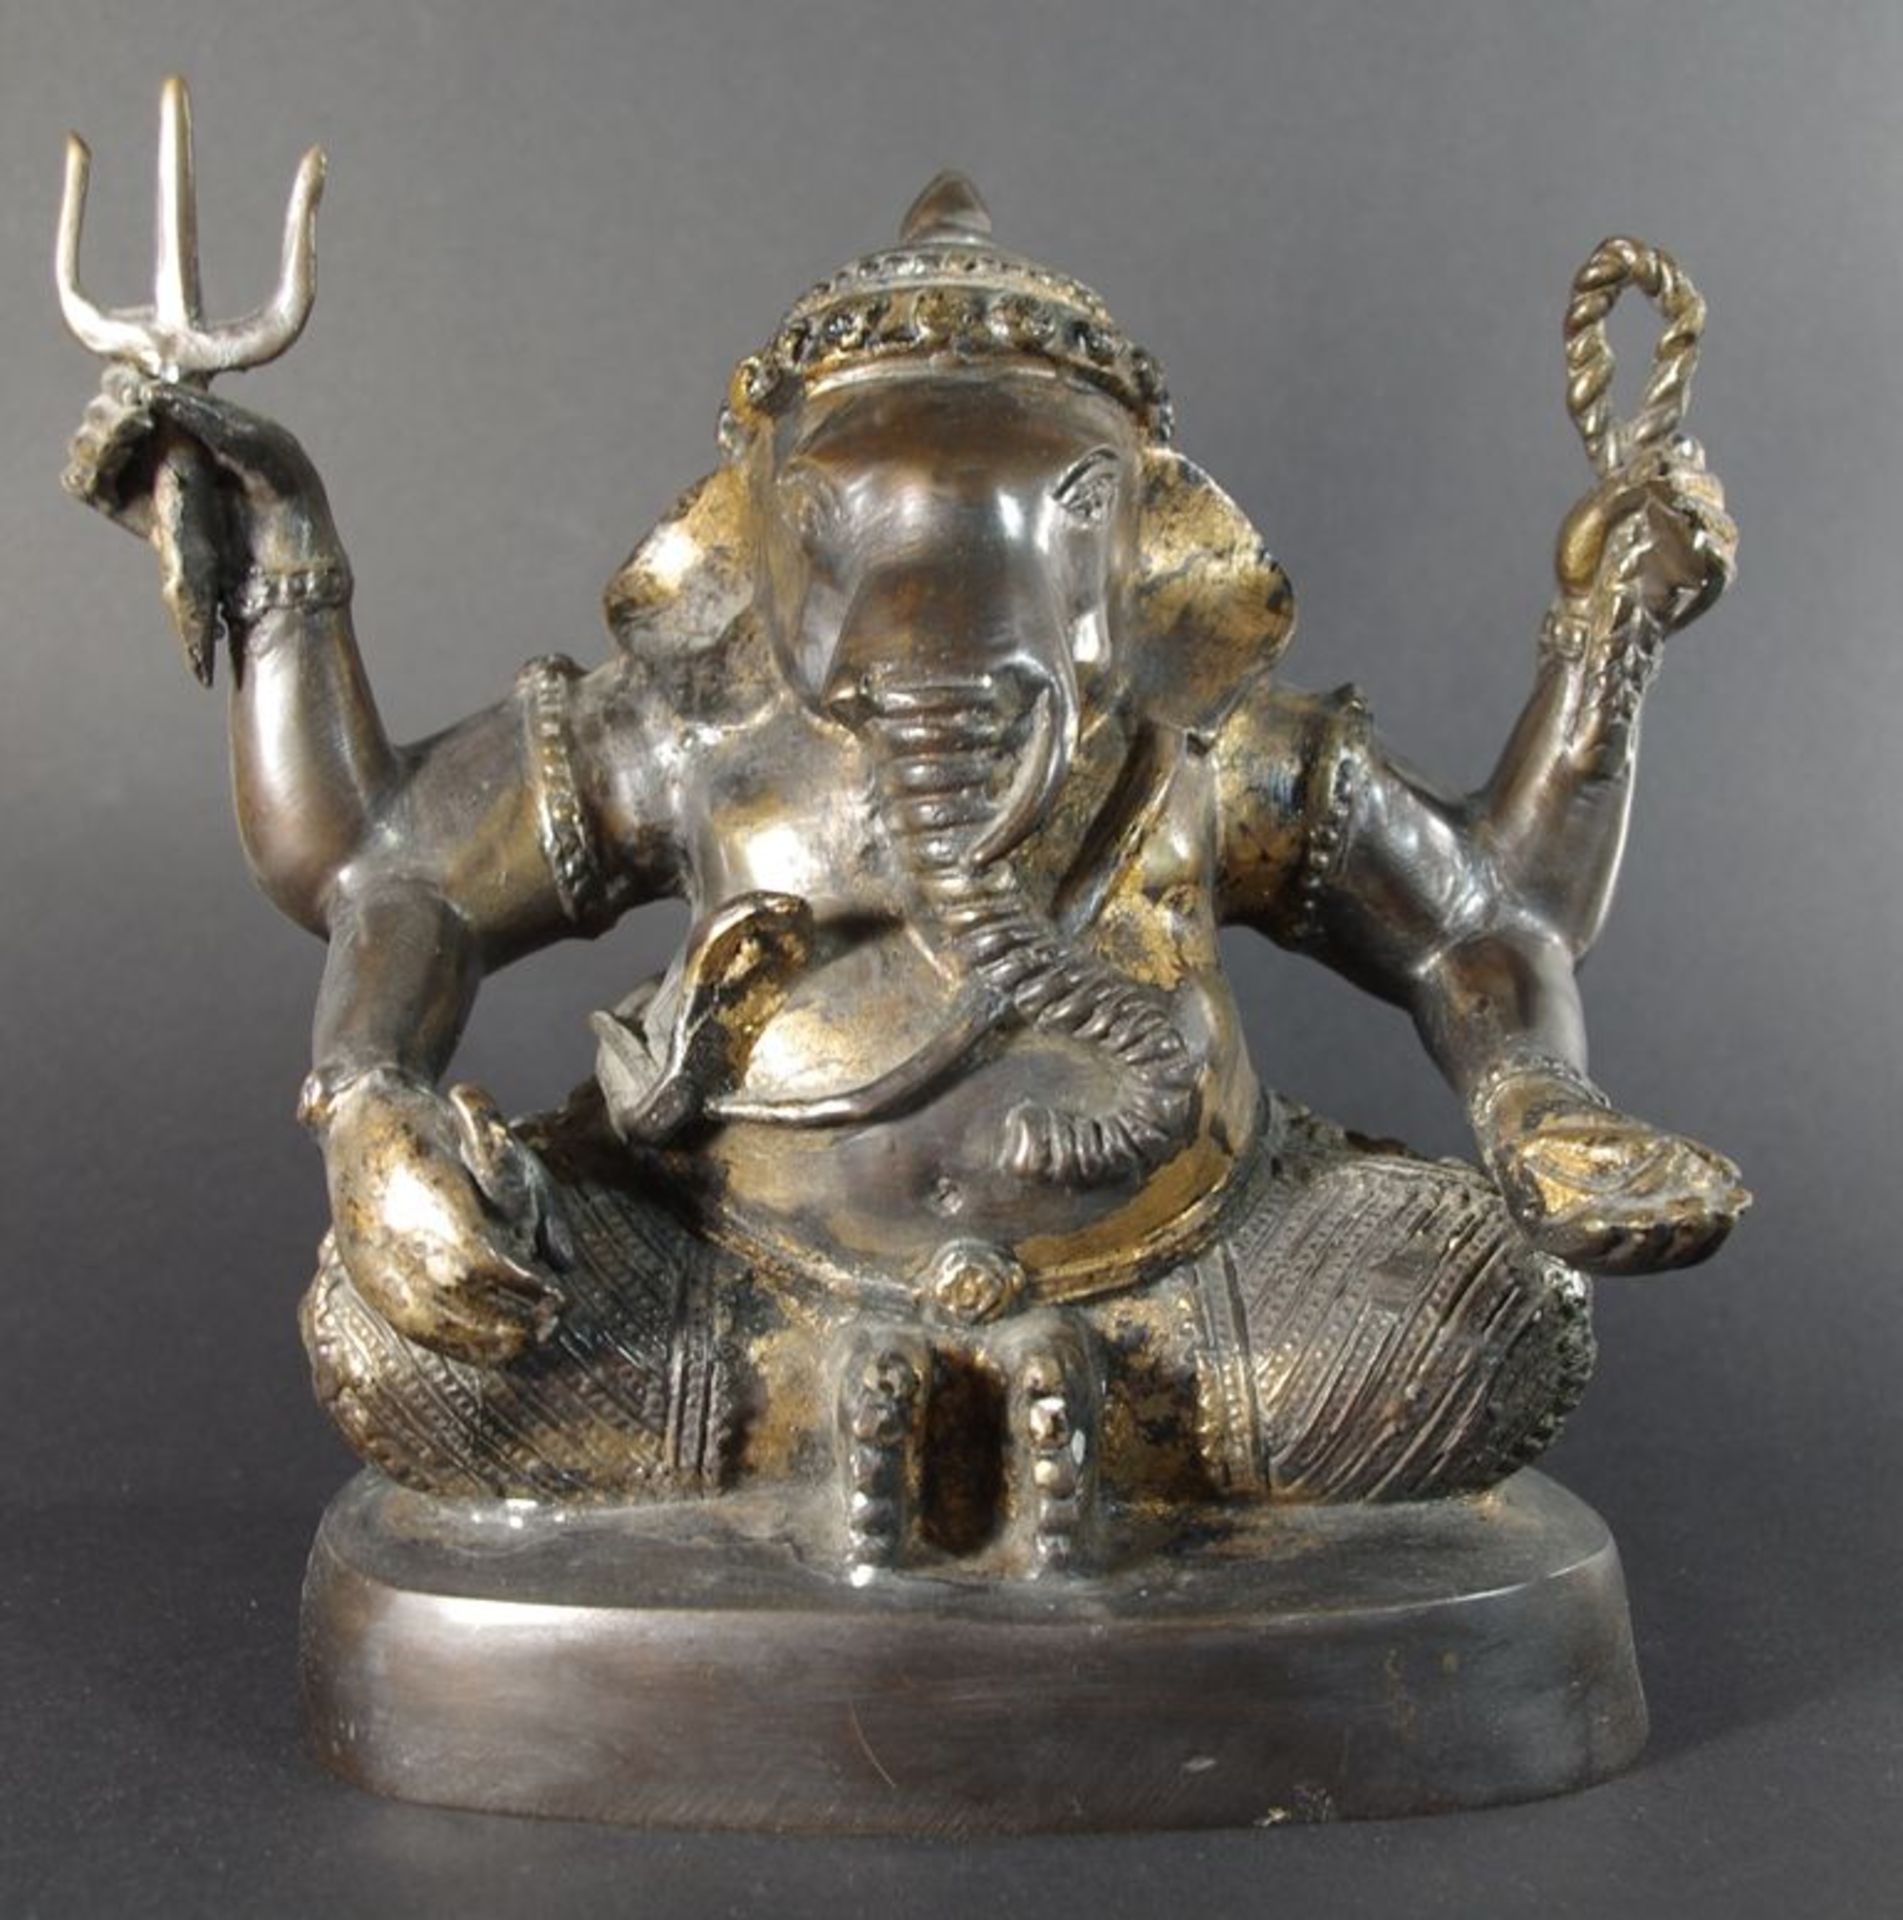 Skulptur Ganesha, sitzender vierarmiger Ganesha mit Attributen, Bronze m. Resten alter Vergoldung,